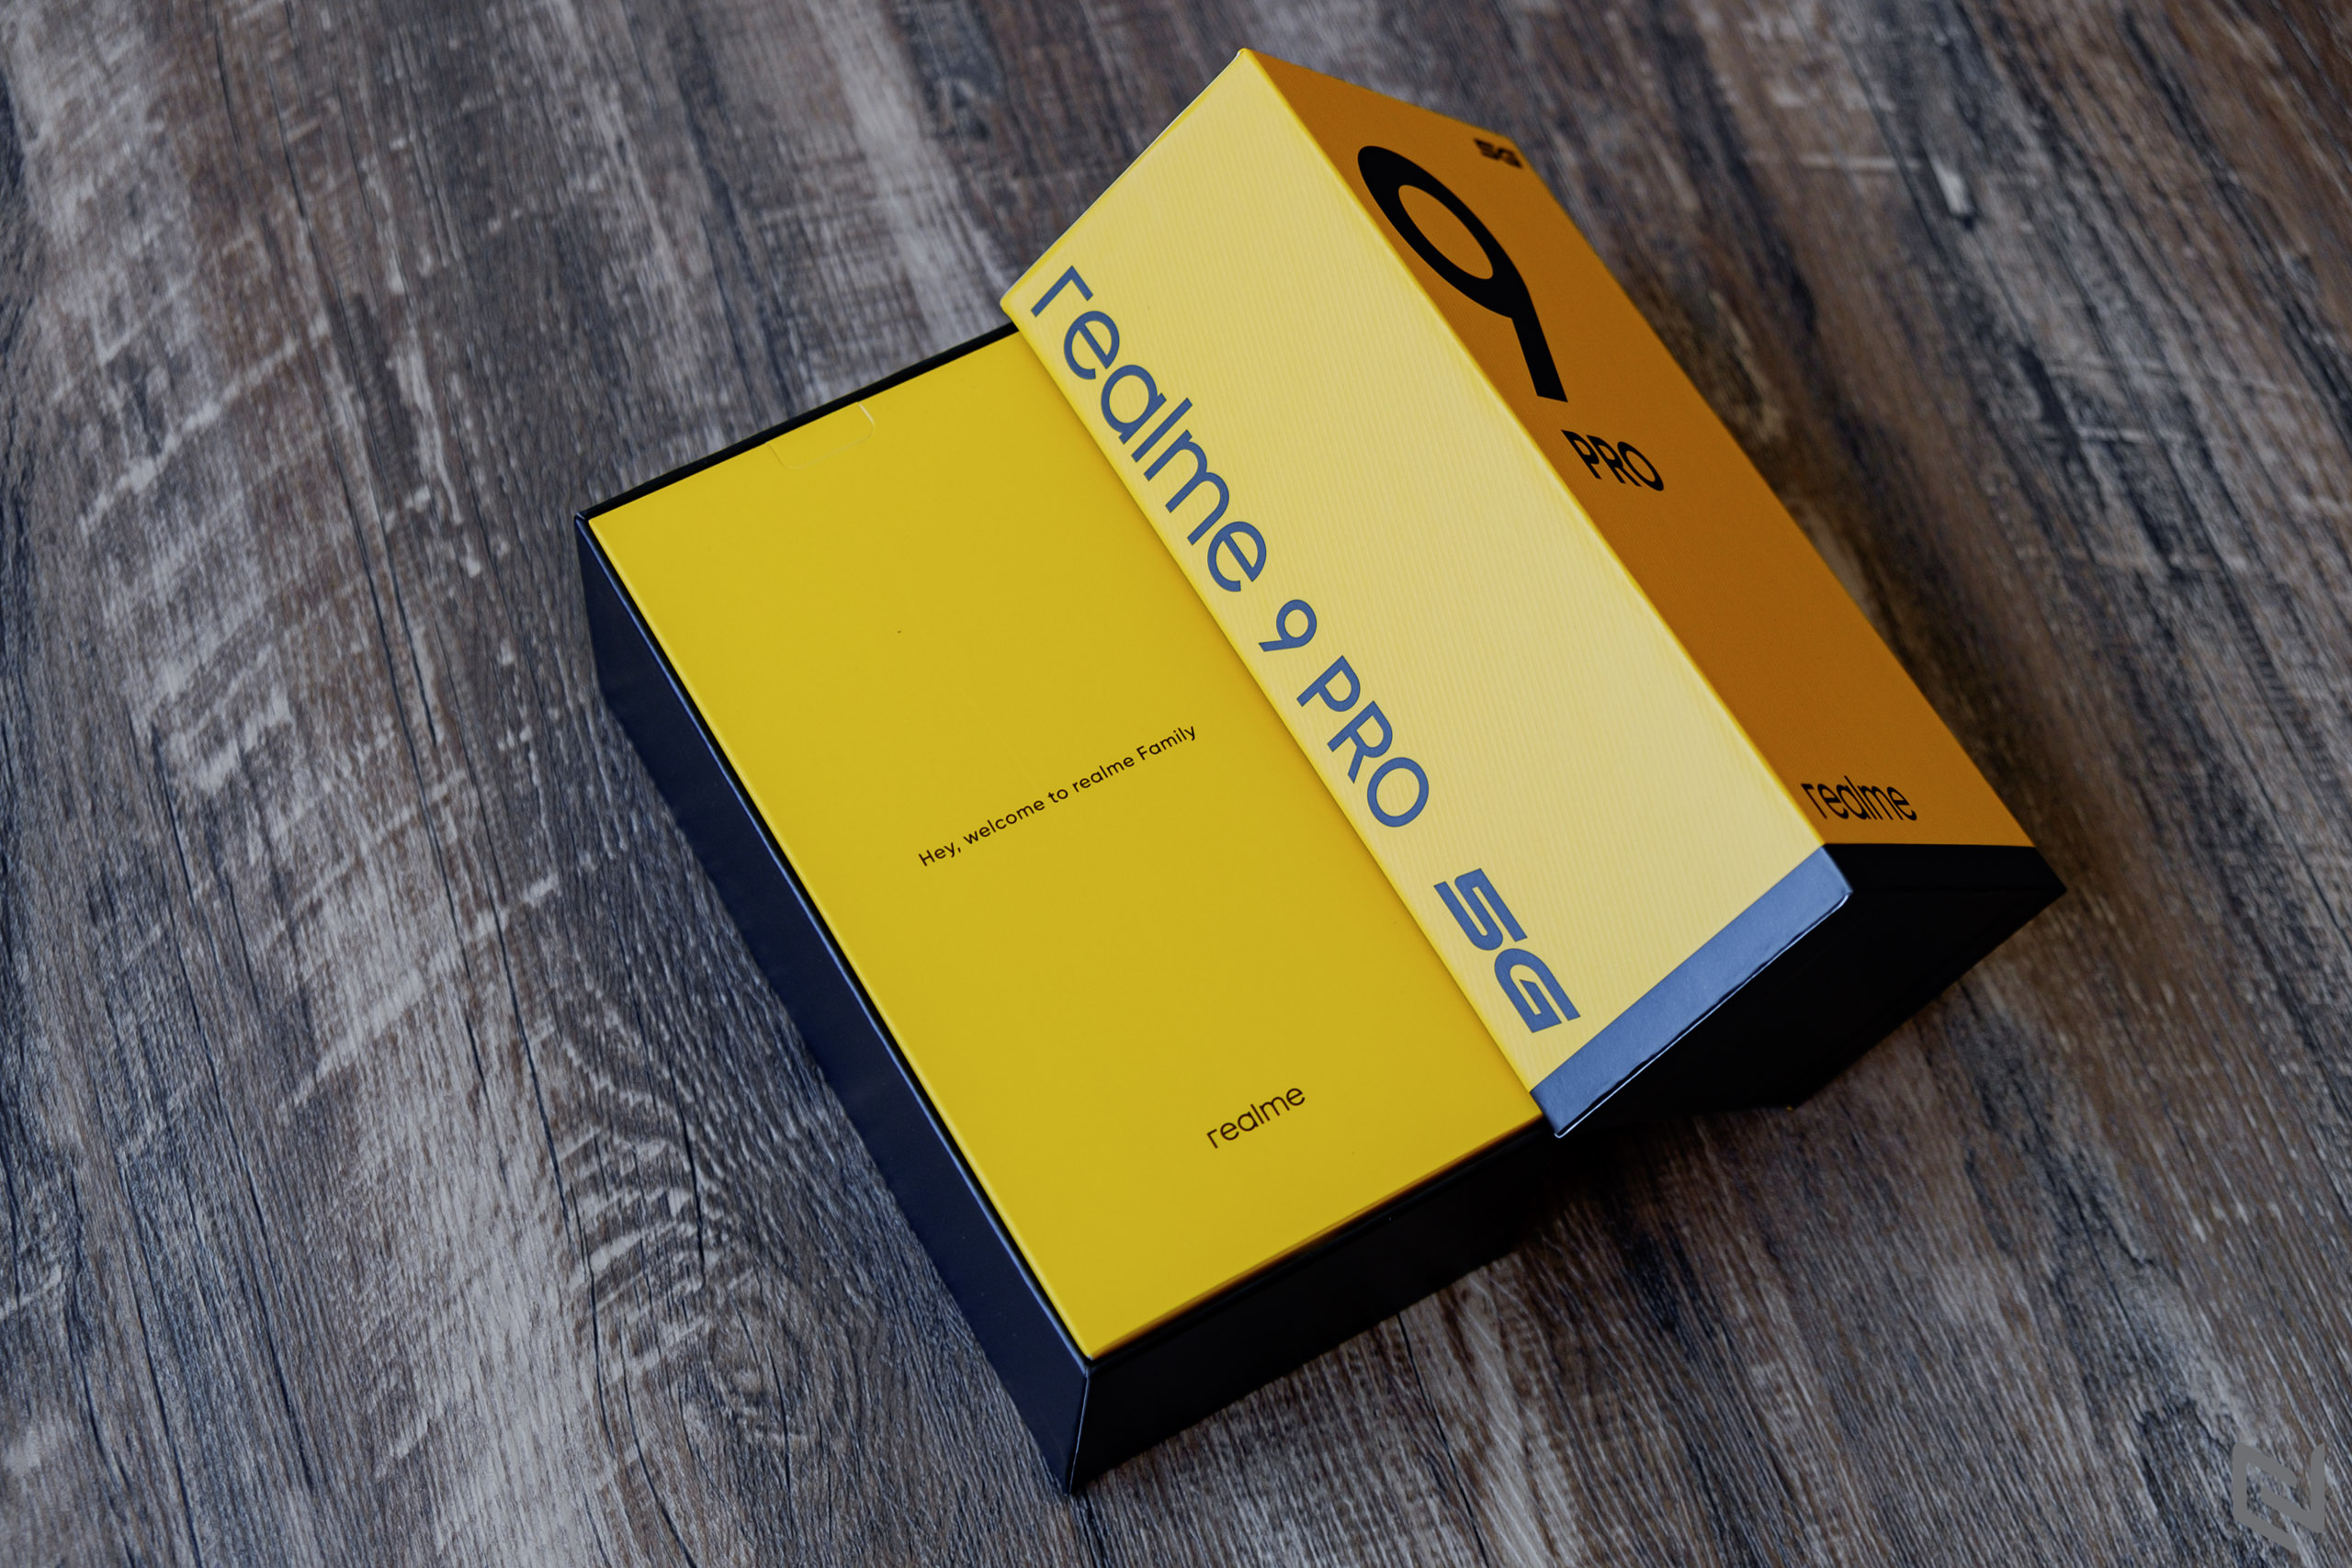 Mở hộp realme 9 Pro: Mặt lưng lấp lánh cực đẹp, camera 64MP,chạy Snapdragon 695 5G